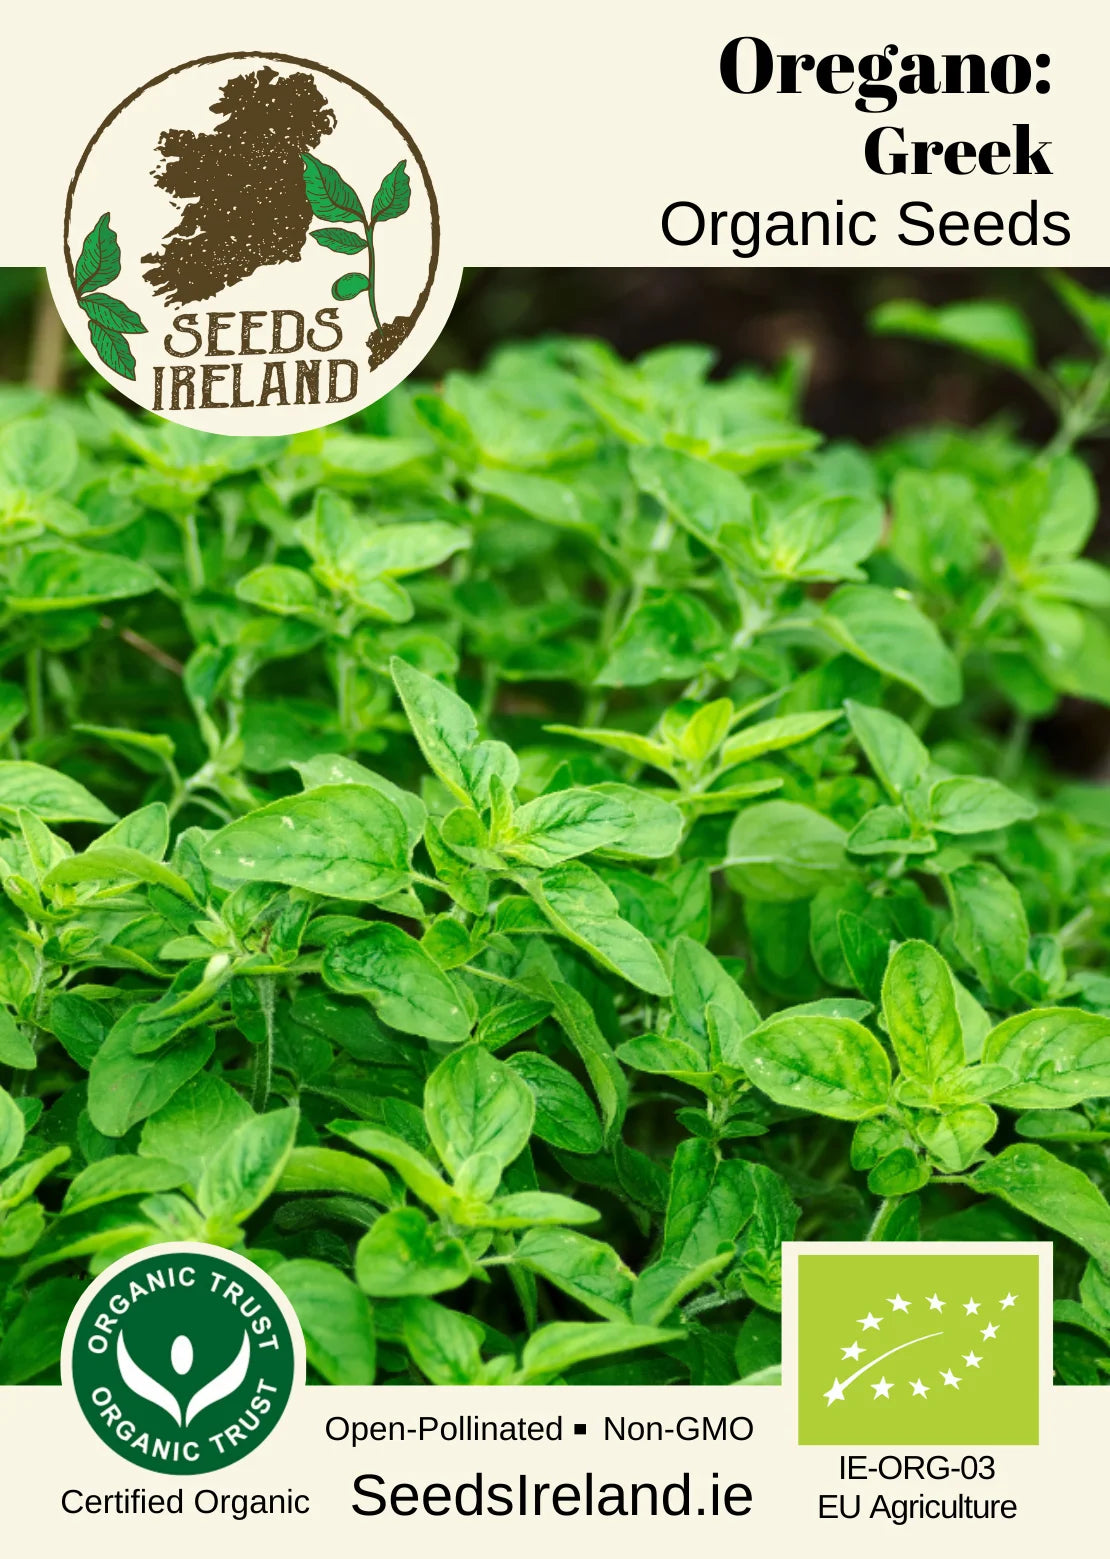 Oregano: Greek Organic Seed